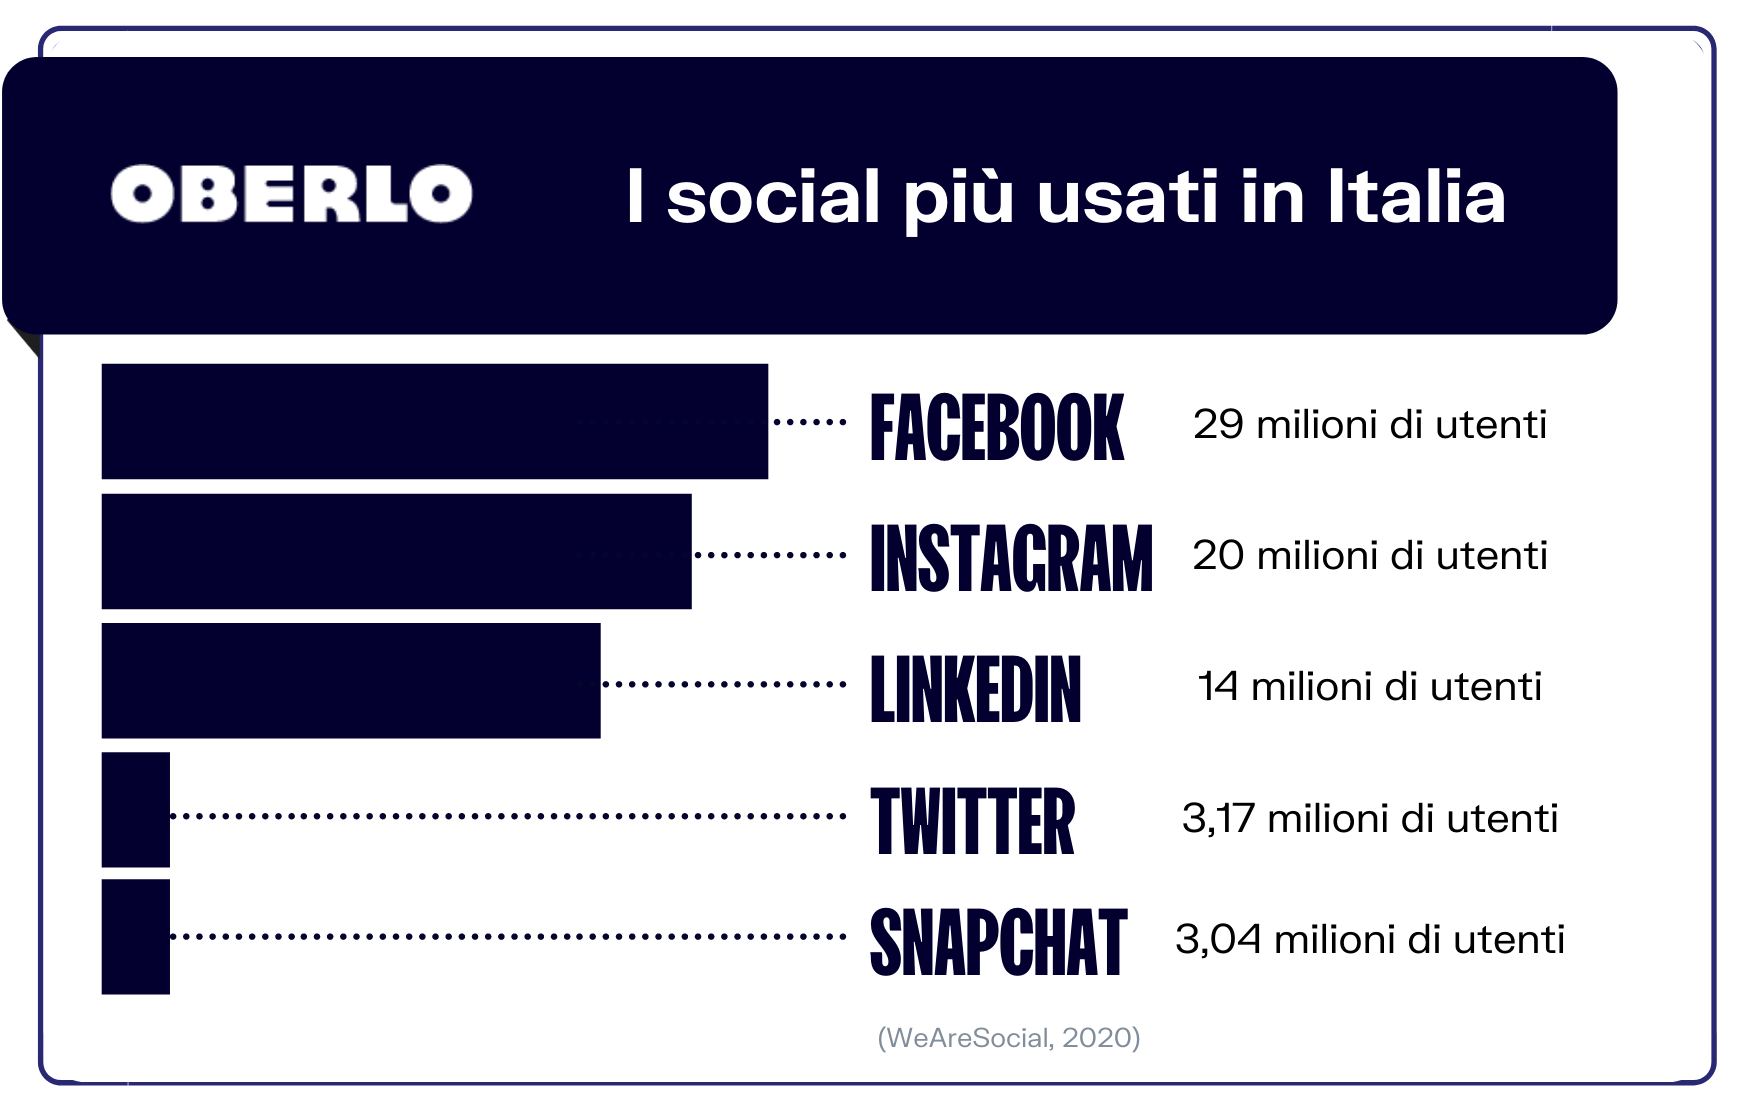 social più usati in Italia